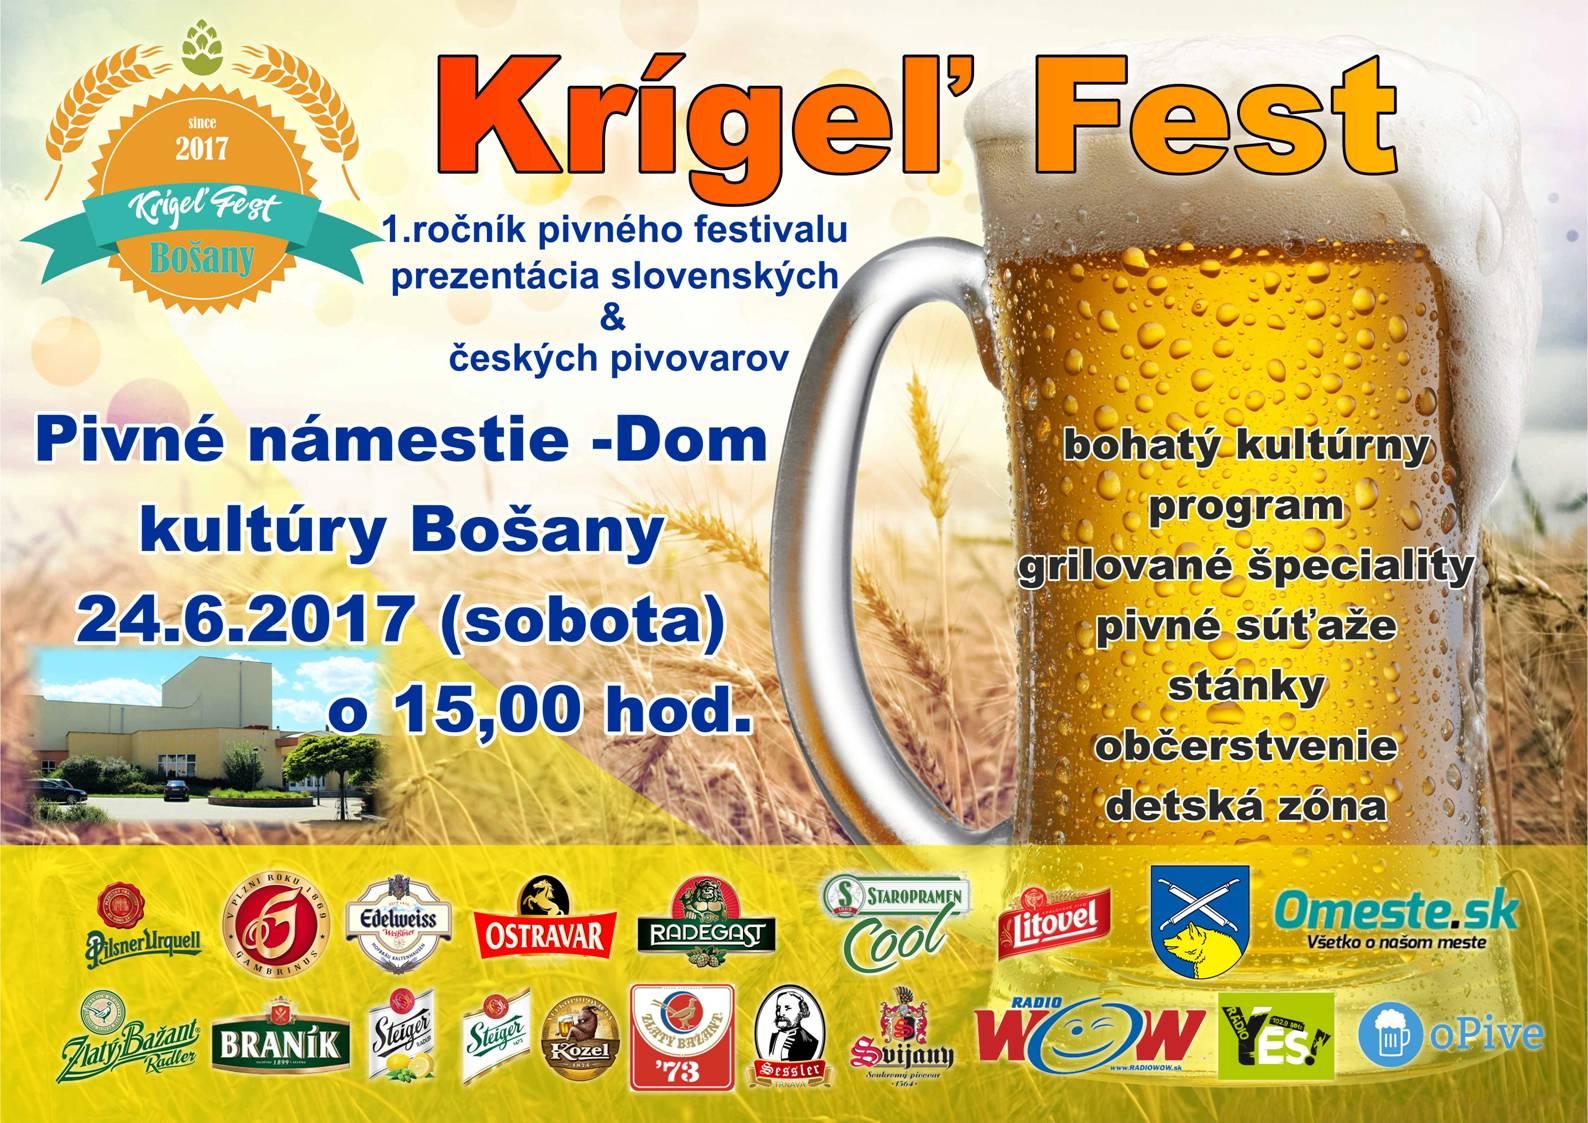 Krígeľ Fest Bošany 2017 - 1. ročník